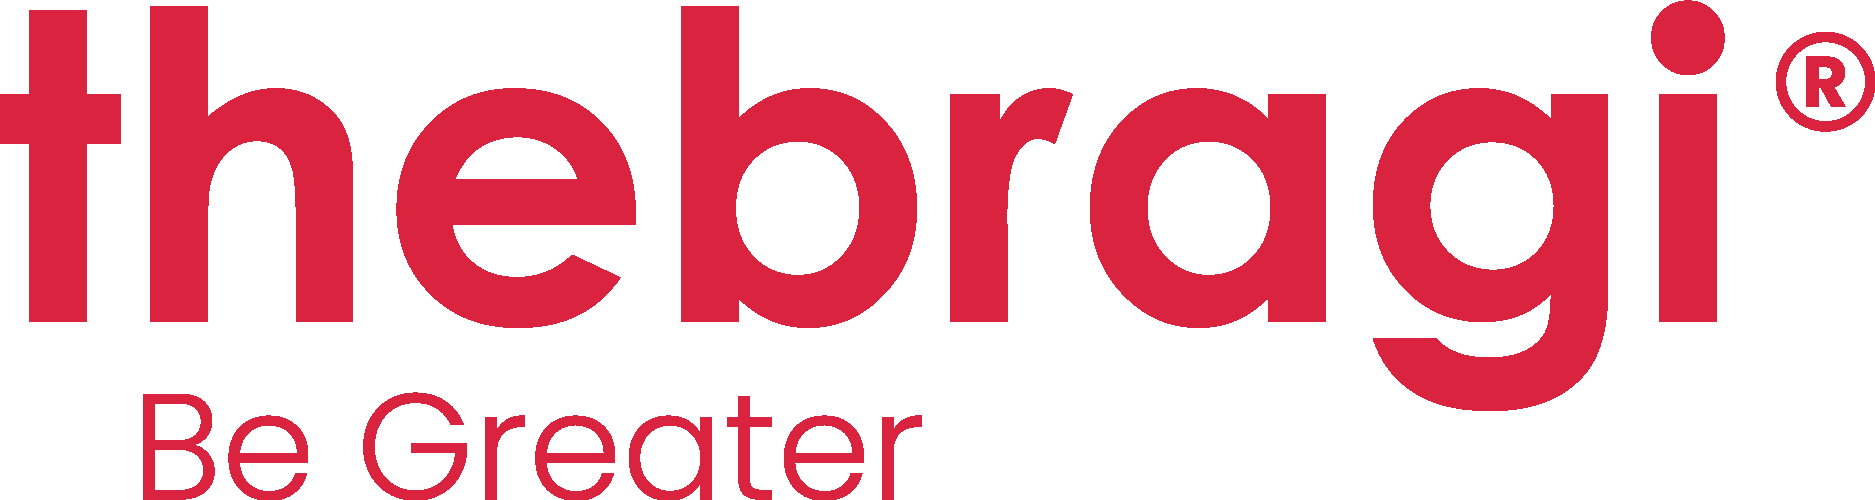 The Bragi Logo Vector